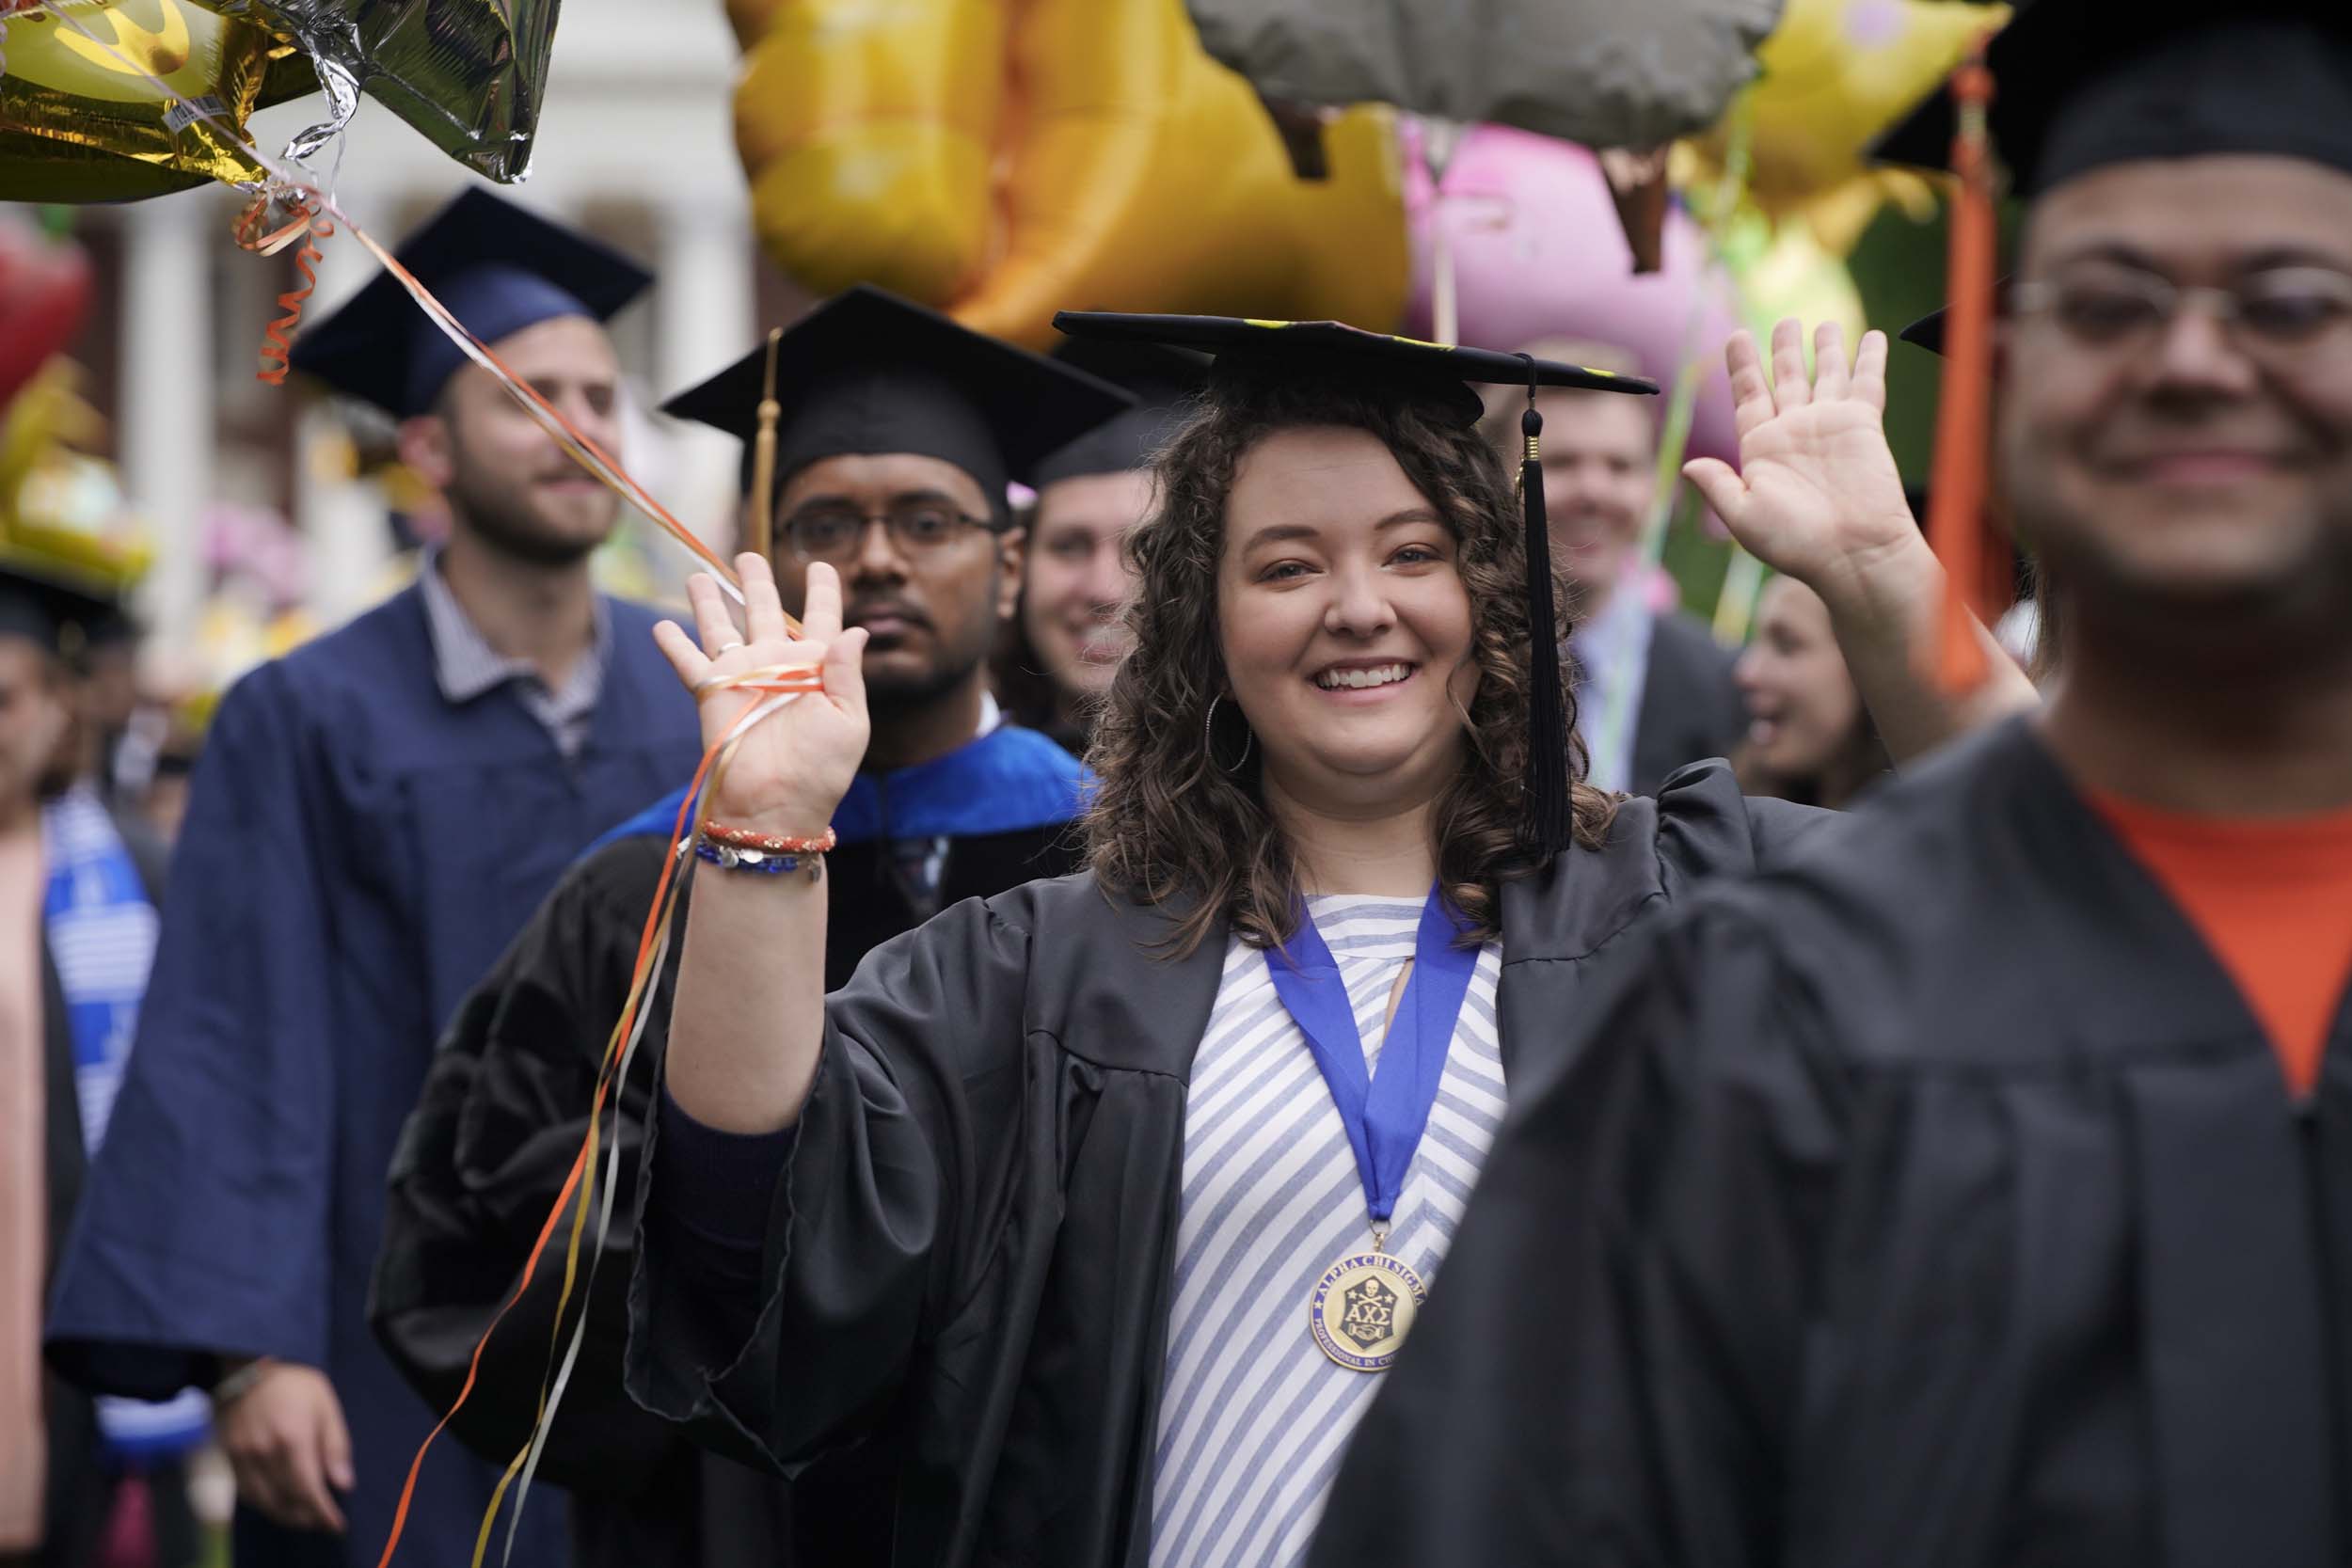 Graduates walking and waving